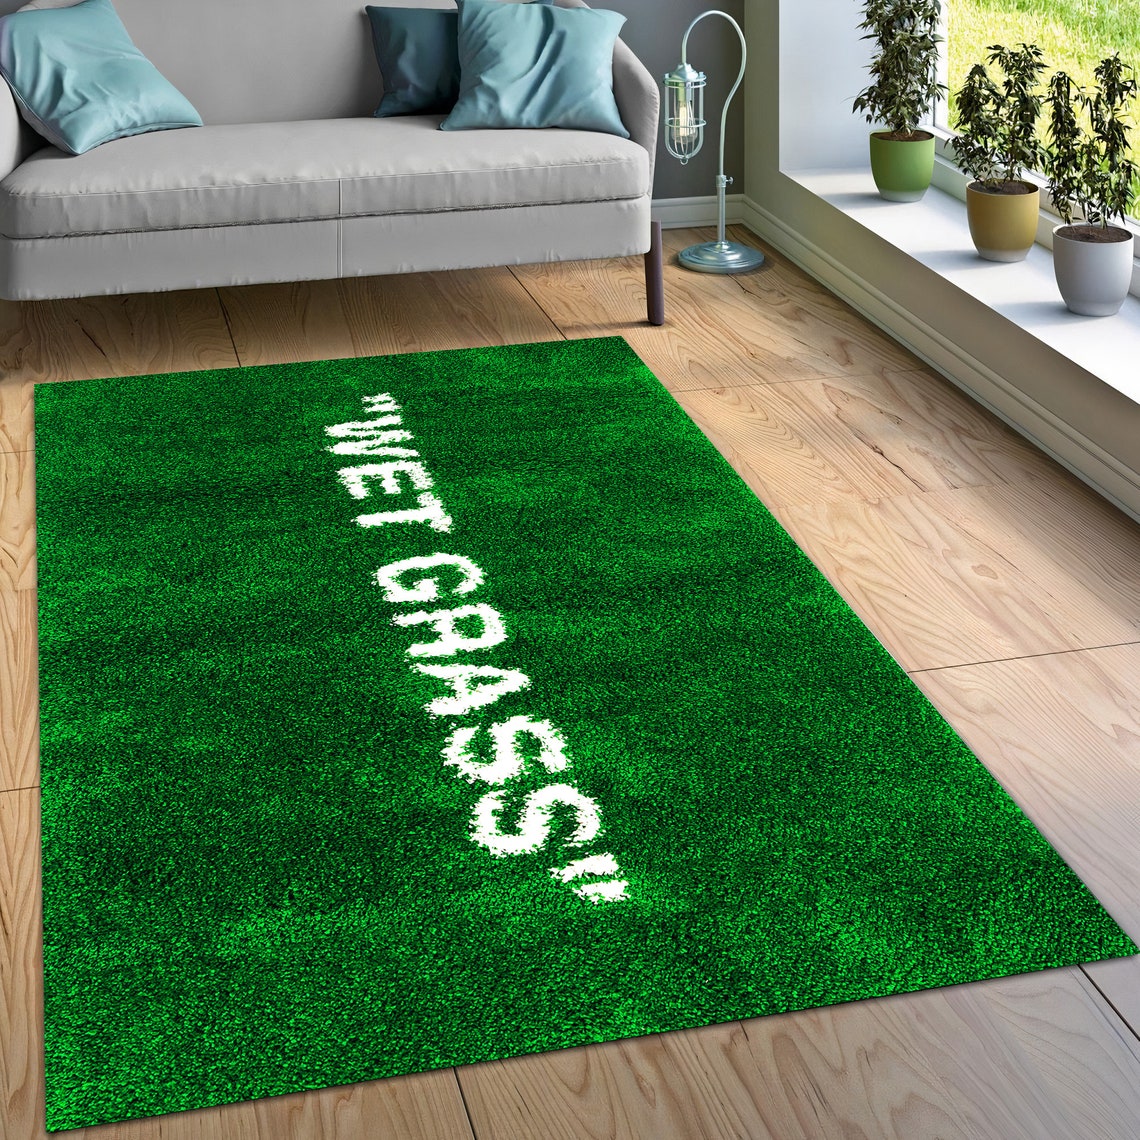 Wet Grass Rug Wet Grass Carpet Wet Grass Modern Rug Area | Etsy